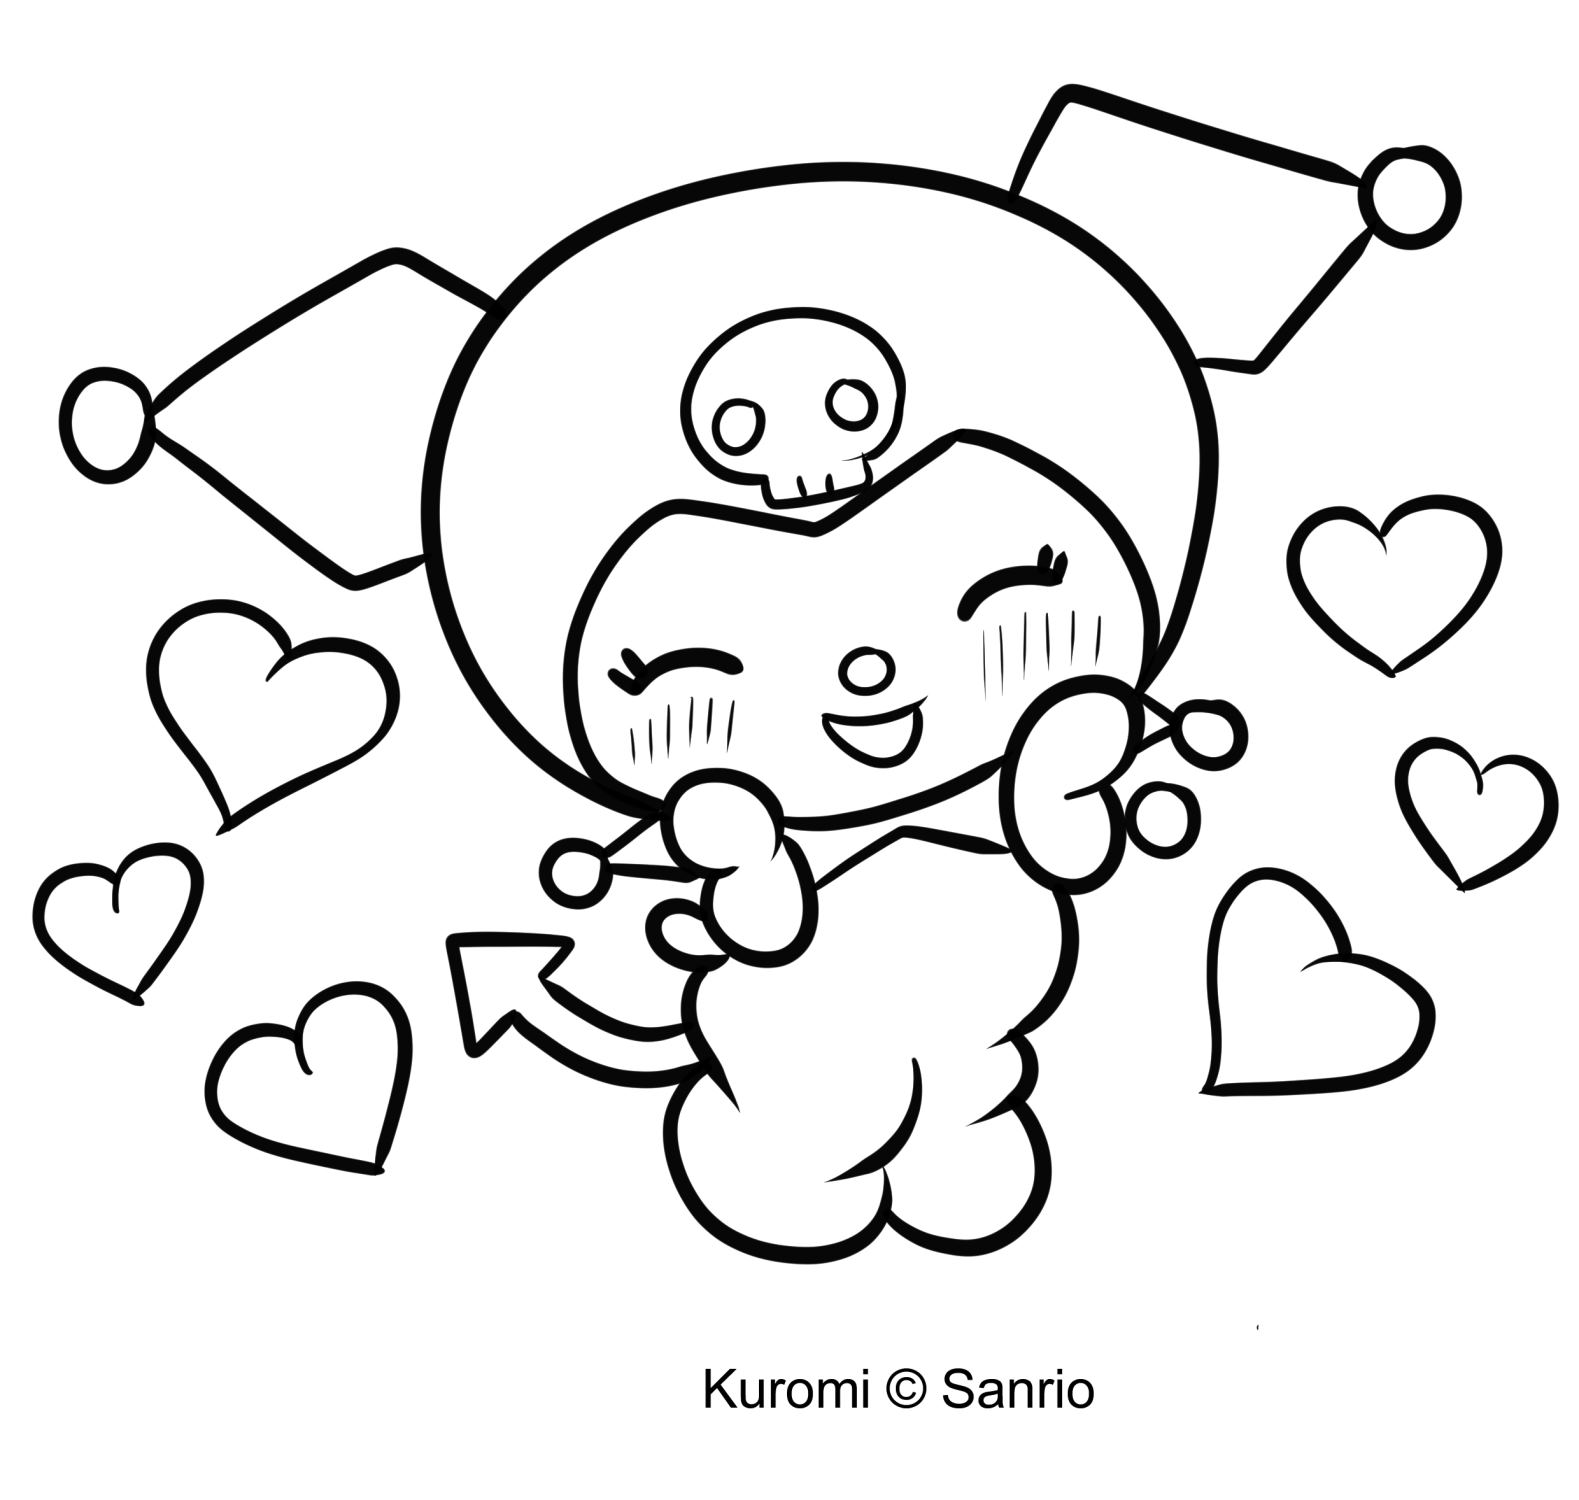 Crtež Kuromi 09 iz My Melody za ispis i bojanje